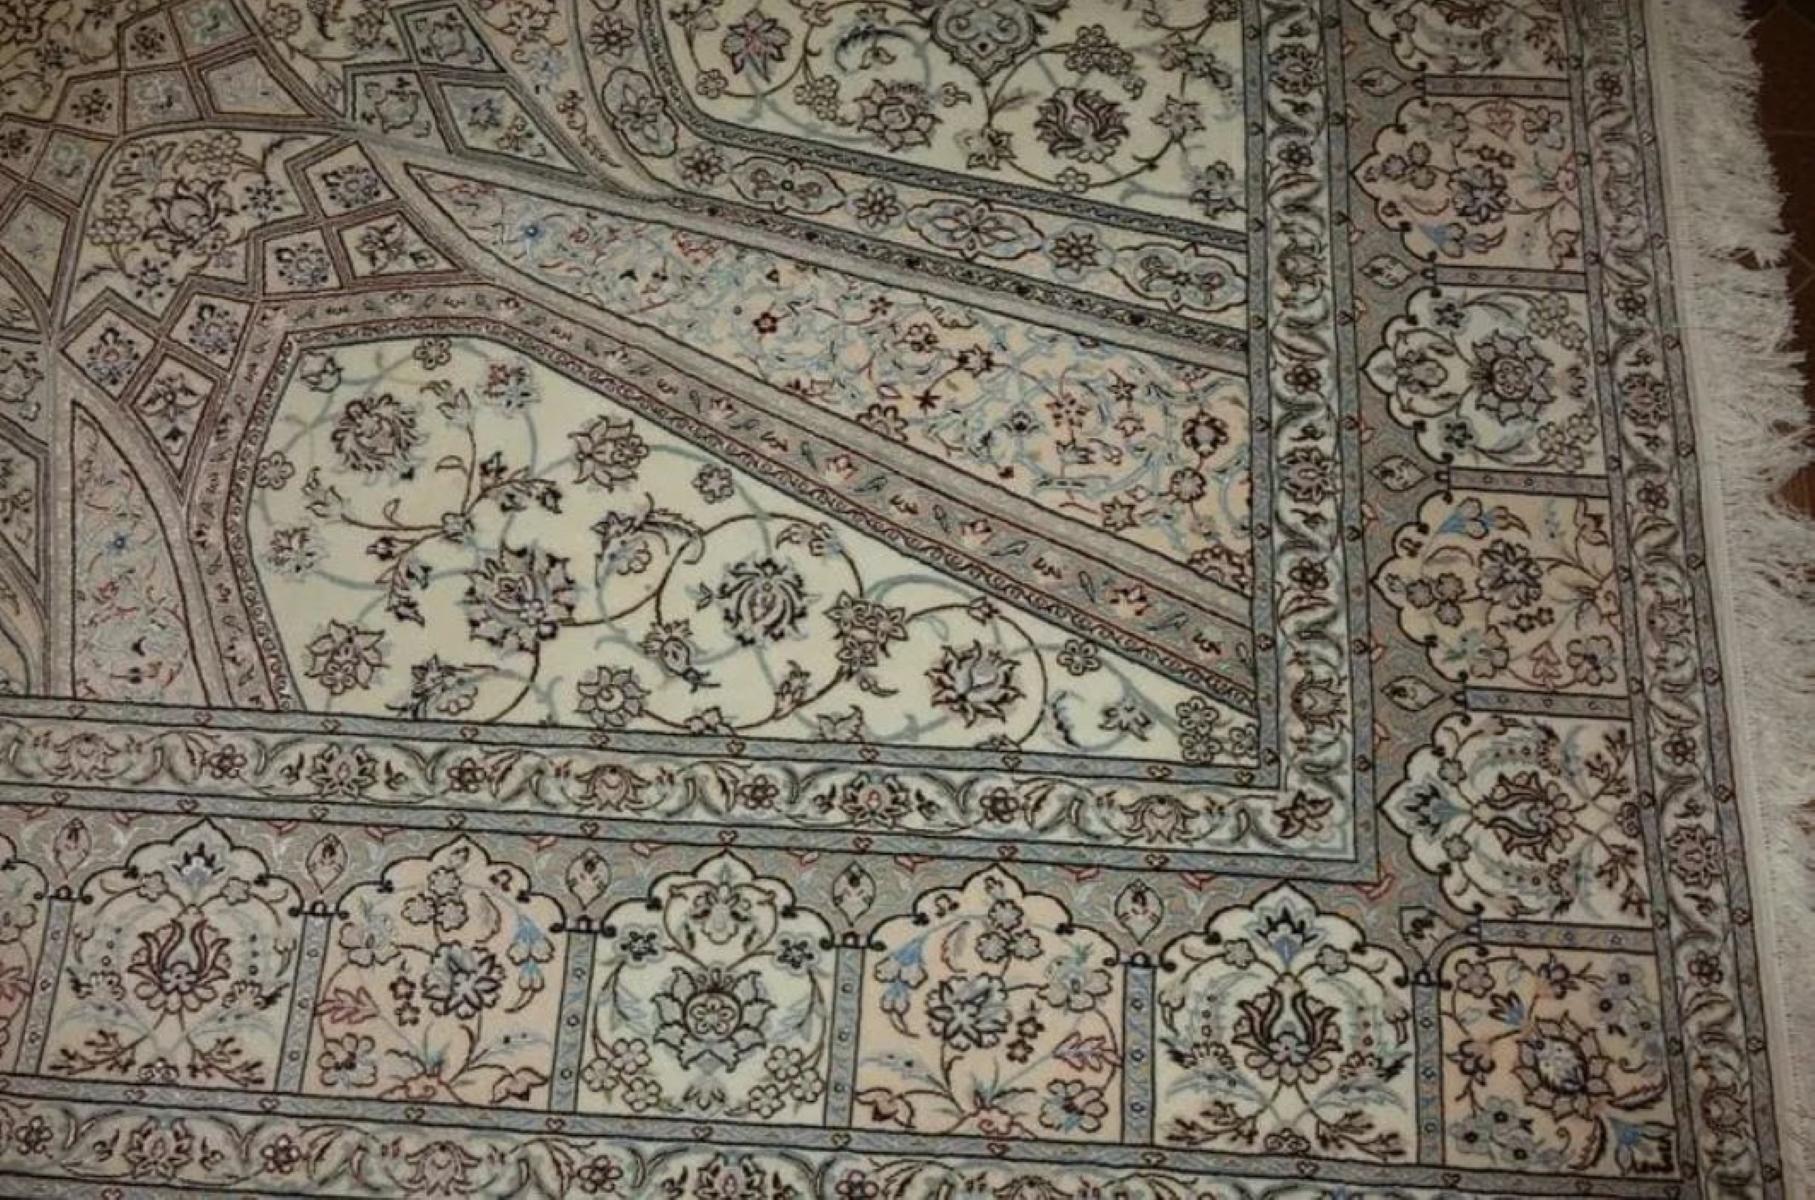 Très beau tapis persan Nain 500 noeuds par pouce, Taille 10.2 x 6.11 Iran Nain Habbibian Laine et Soie. Environ 5 000 000 de nœuds noués à la main, un par un. Il faut 3 ans pour réaliser cette œuvre d'art.